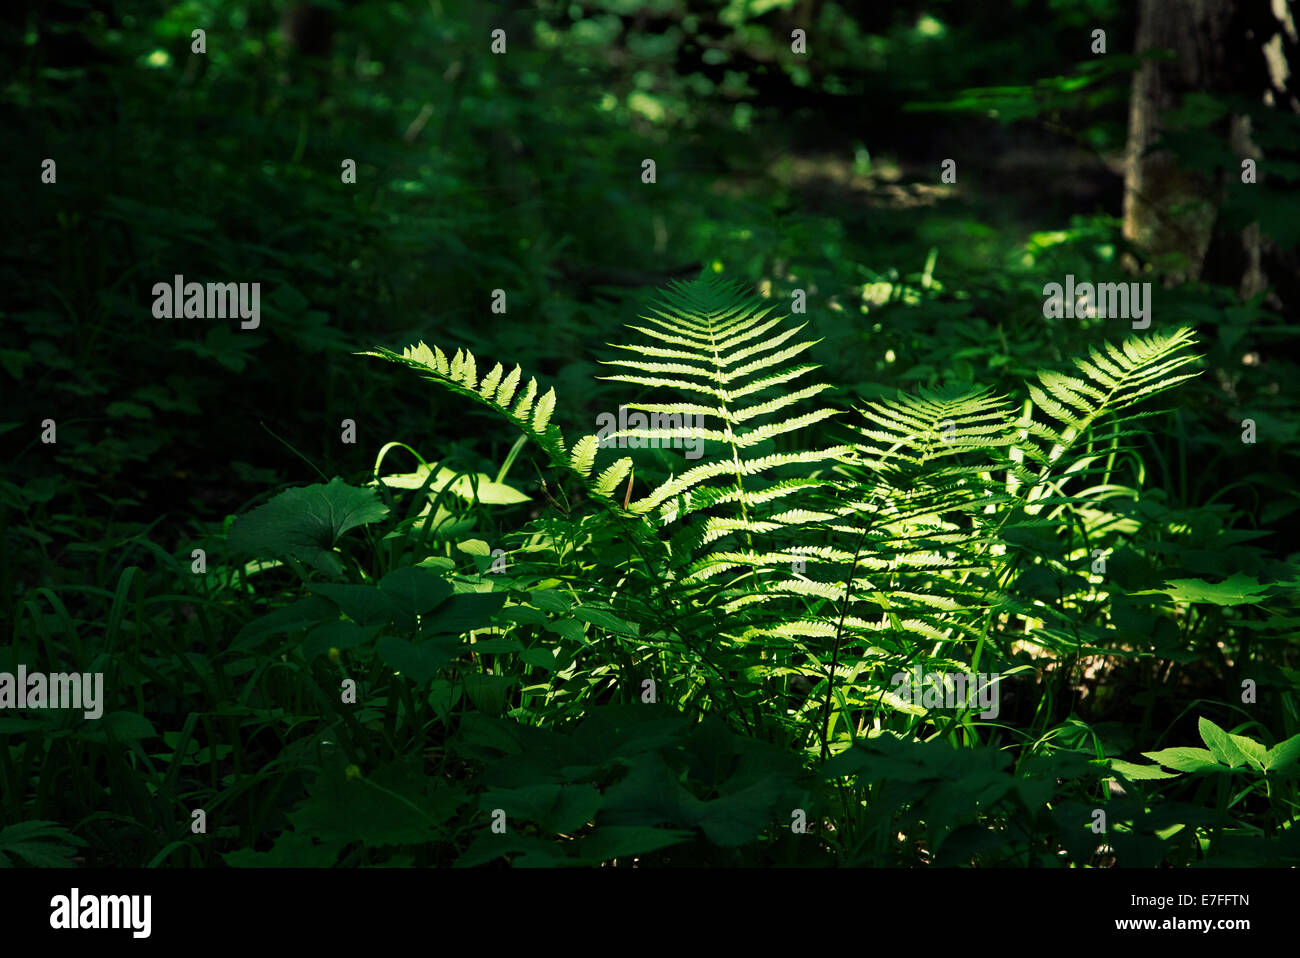 La felce illuminata luminosamente bu sunray tra la fitta foresta scura Foto Stock